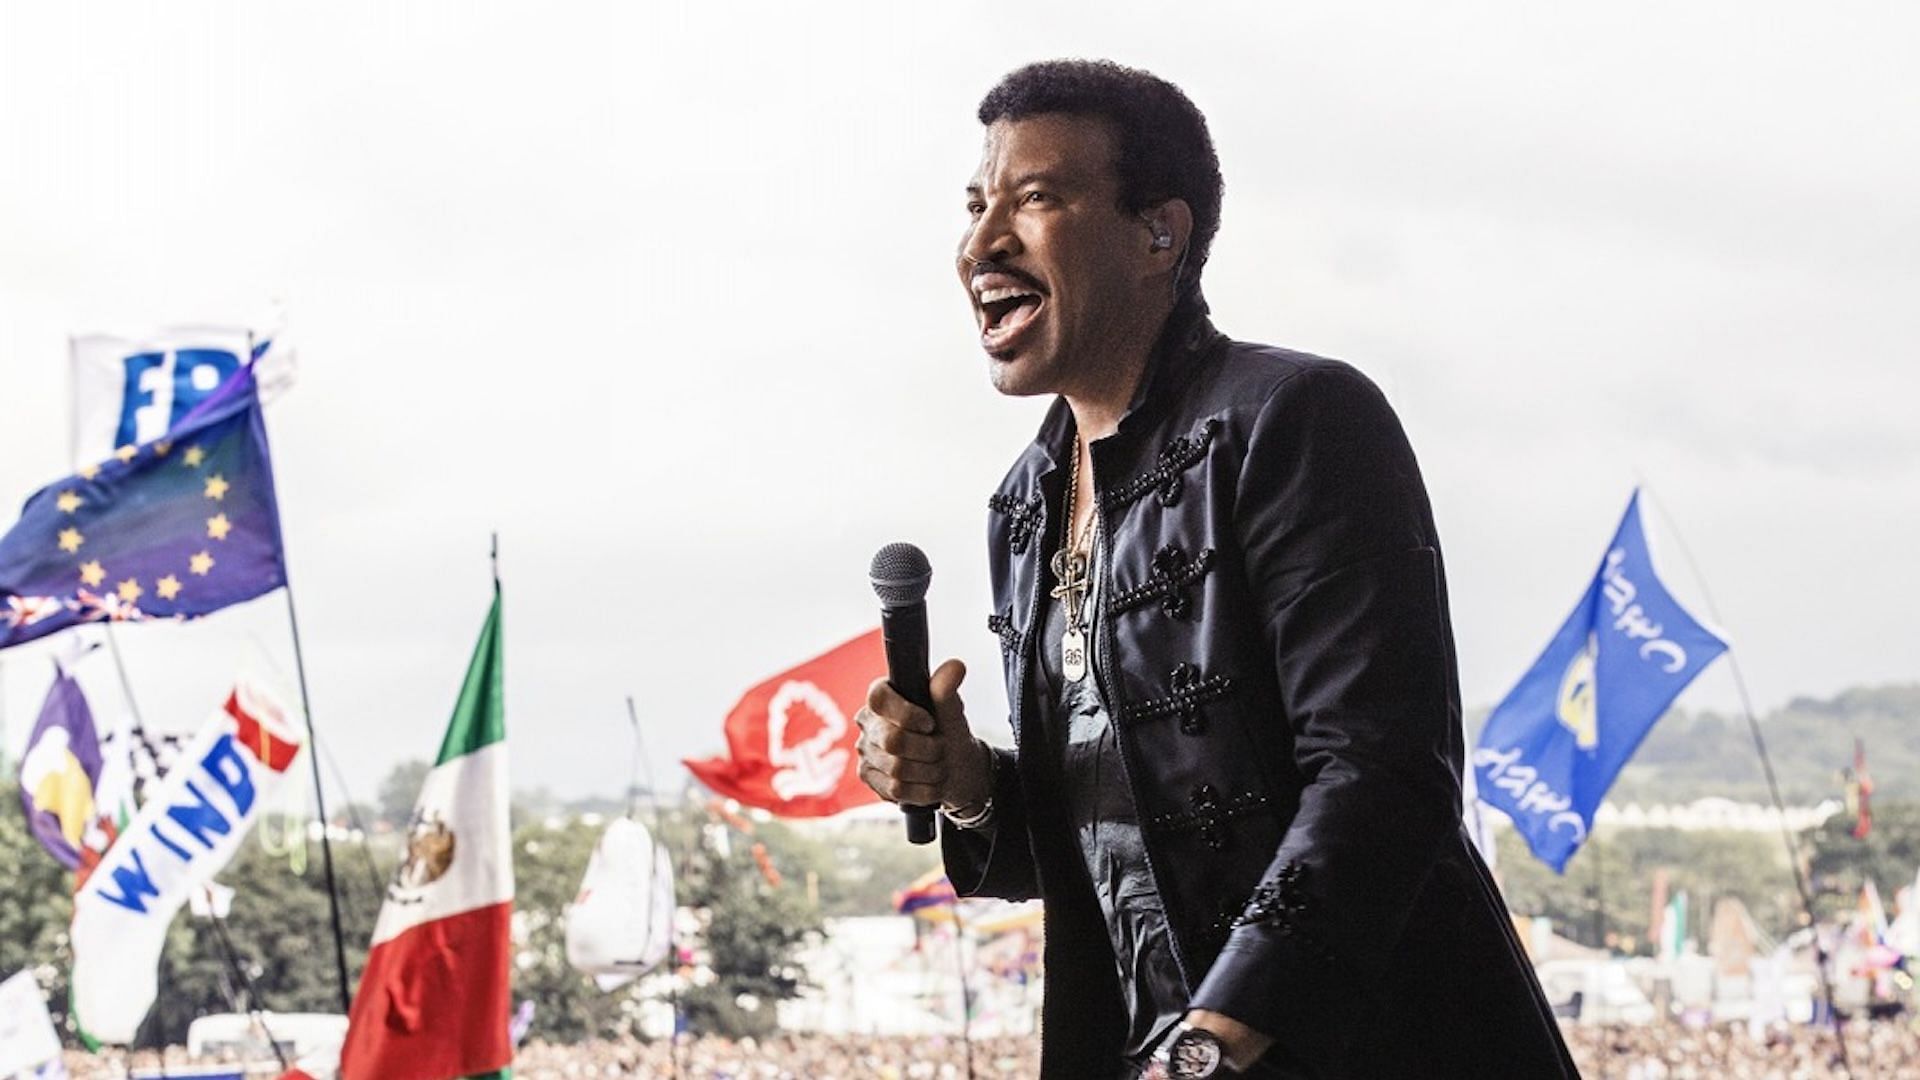 Lionel Richie performing at Glastonbury in 2015 (Image via Lionel Richie